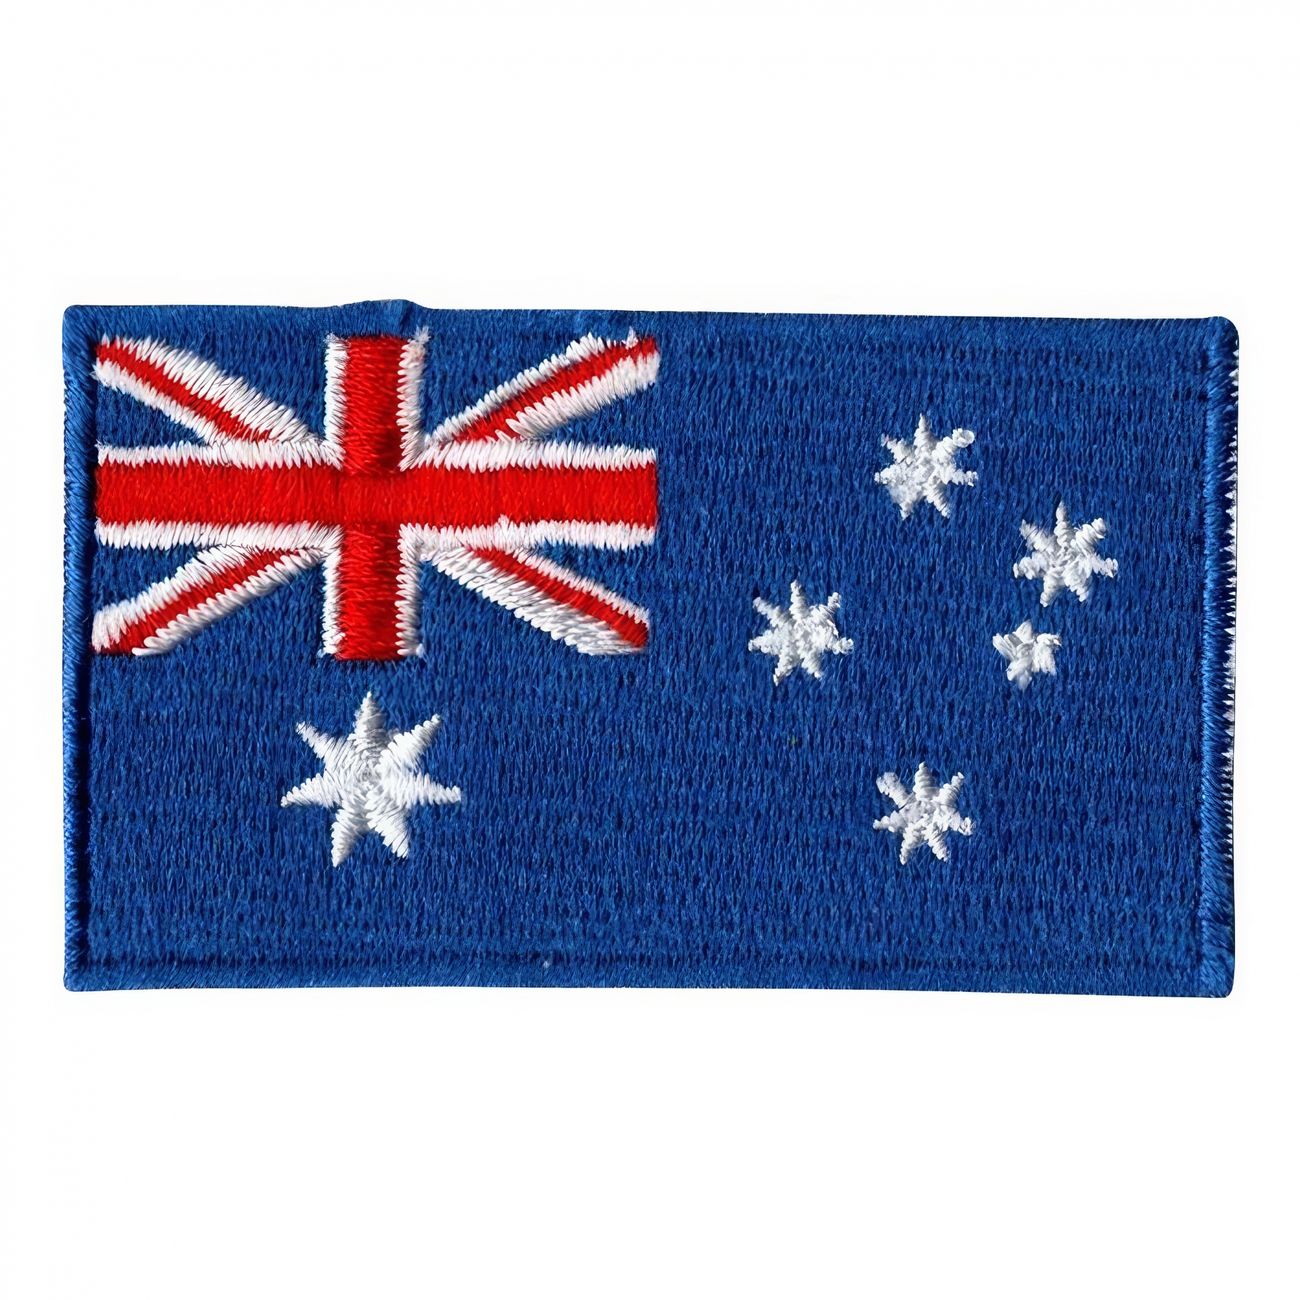 tygmarke-flagga-australien-94139-1